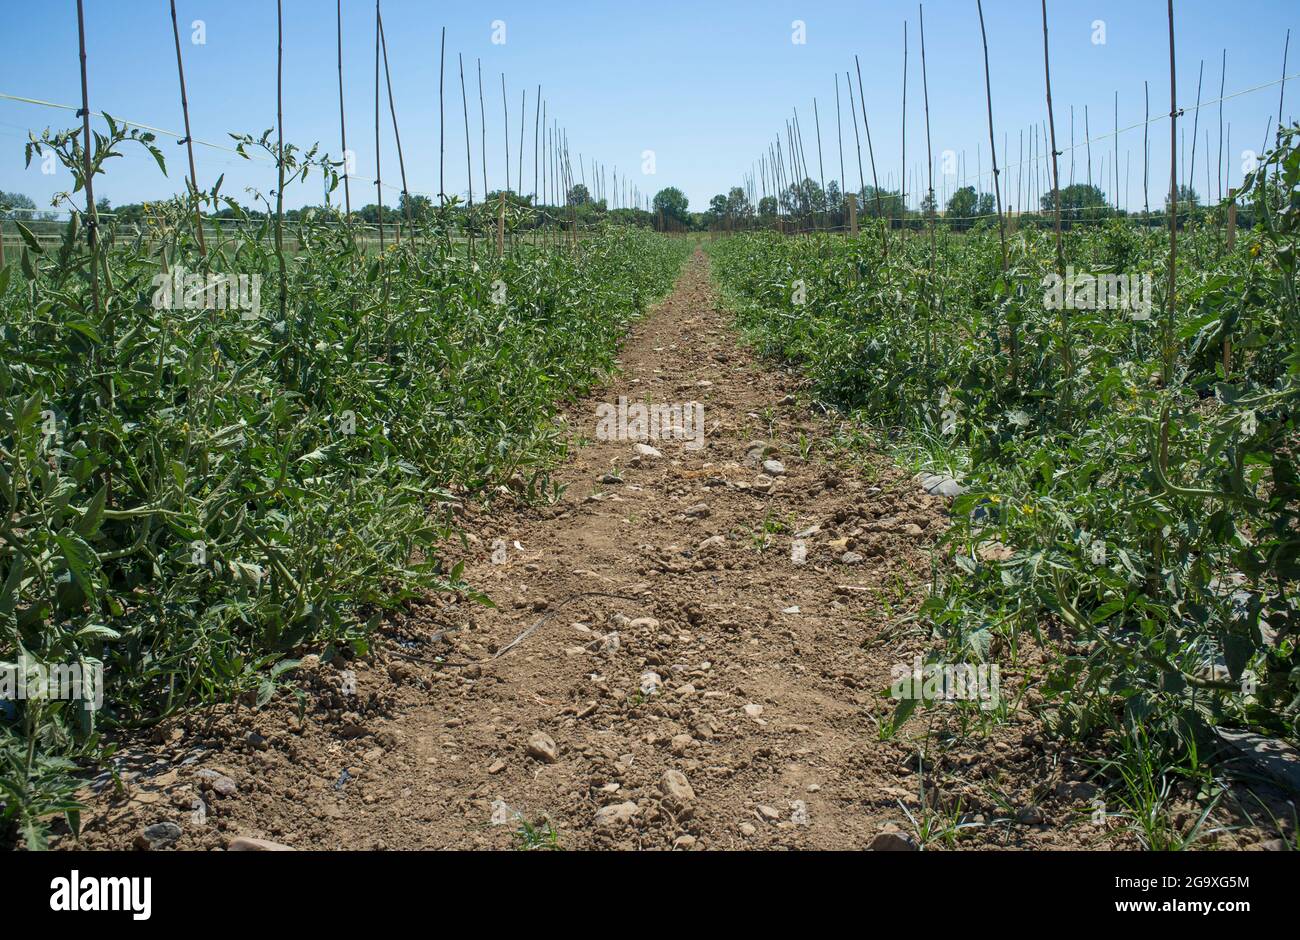 Plantation de tomates sillons avec cavalier. Las Vegas Bajas del Guadiana, Espagne Banque D'Images